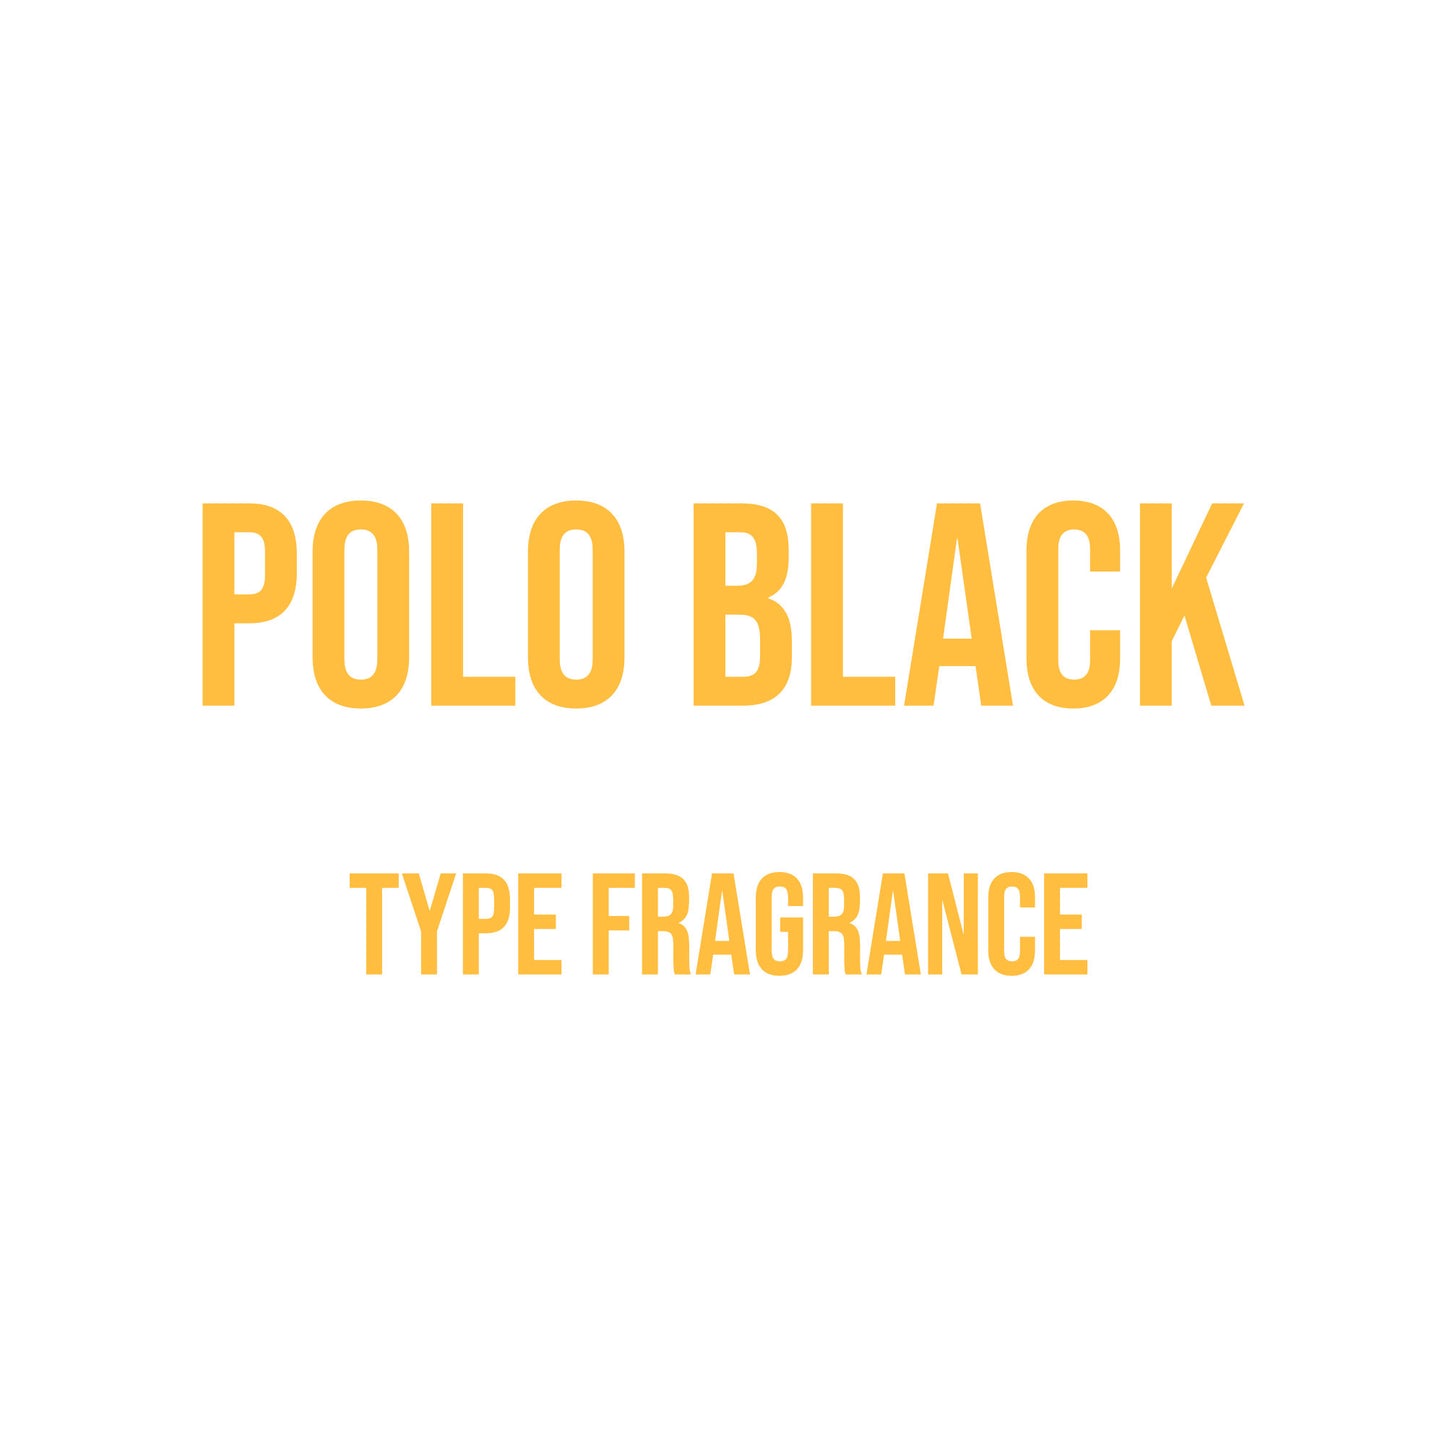 Polo Black Type Fragrance